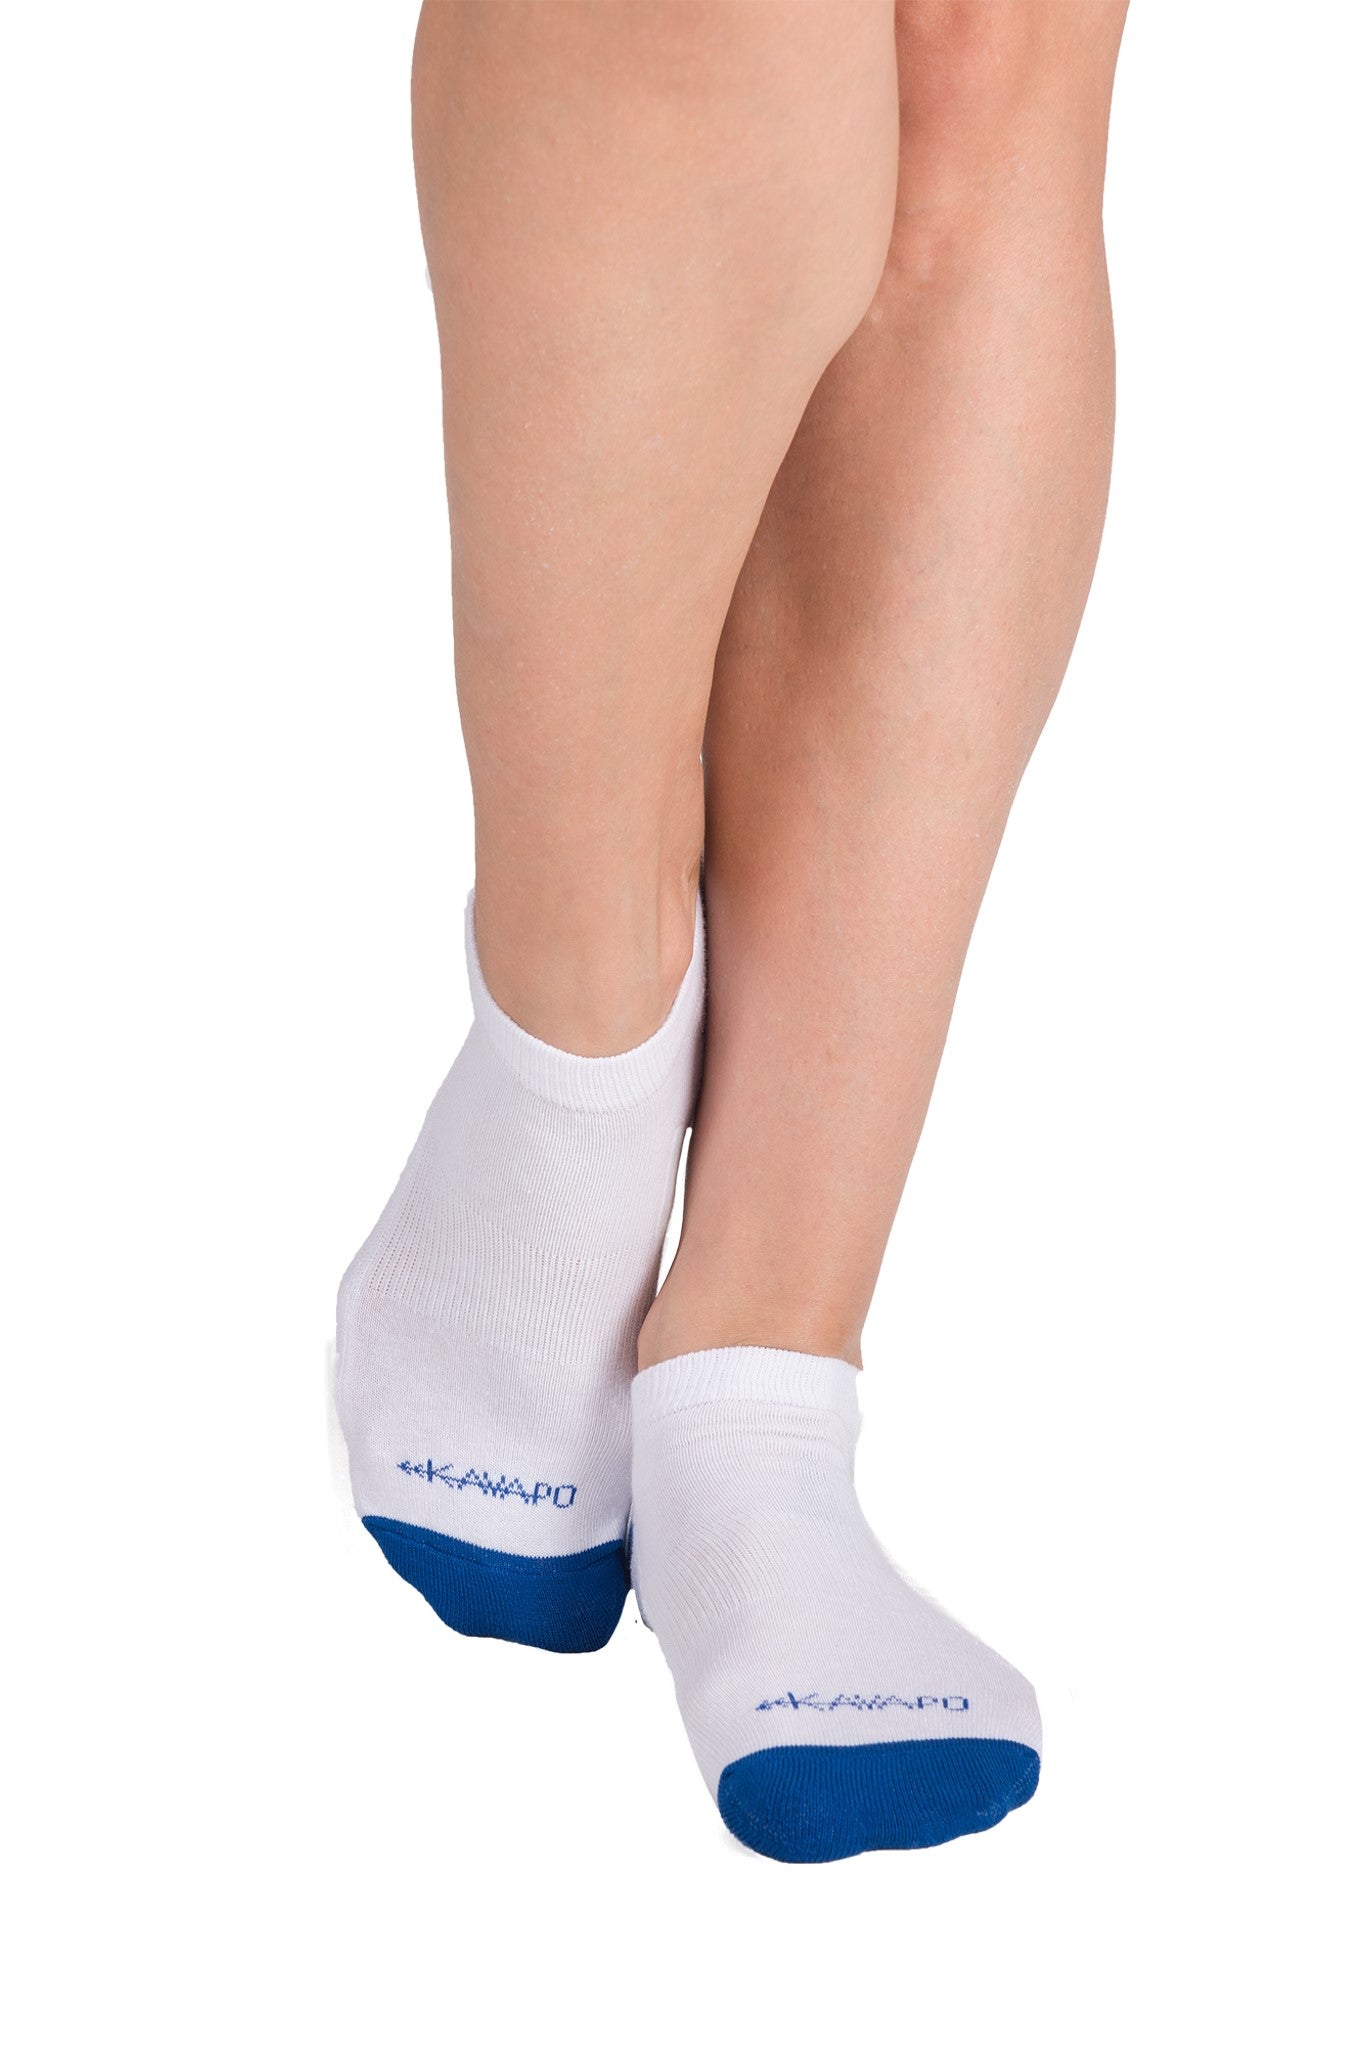 Kayapo Women's Ankle Socks